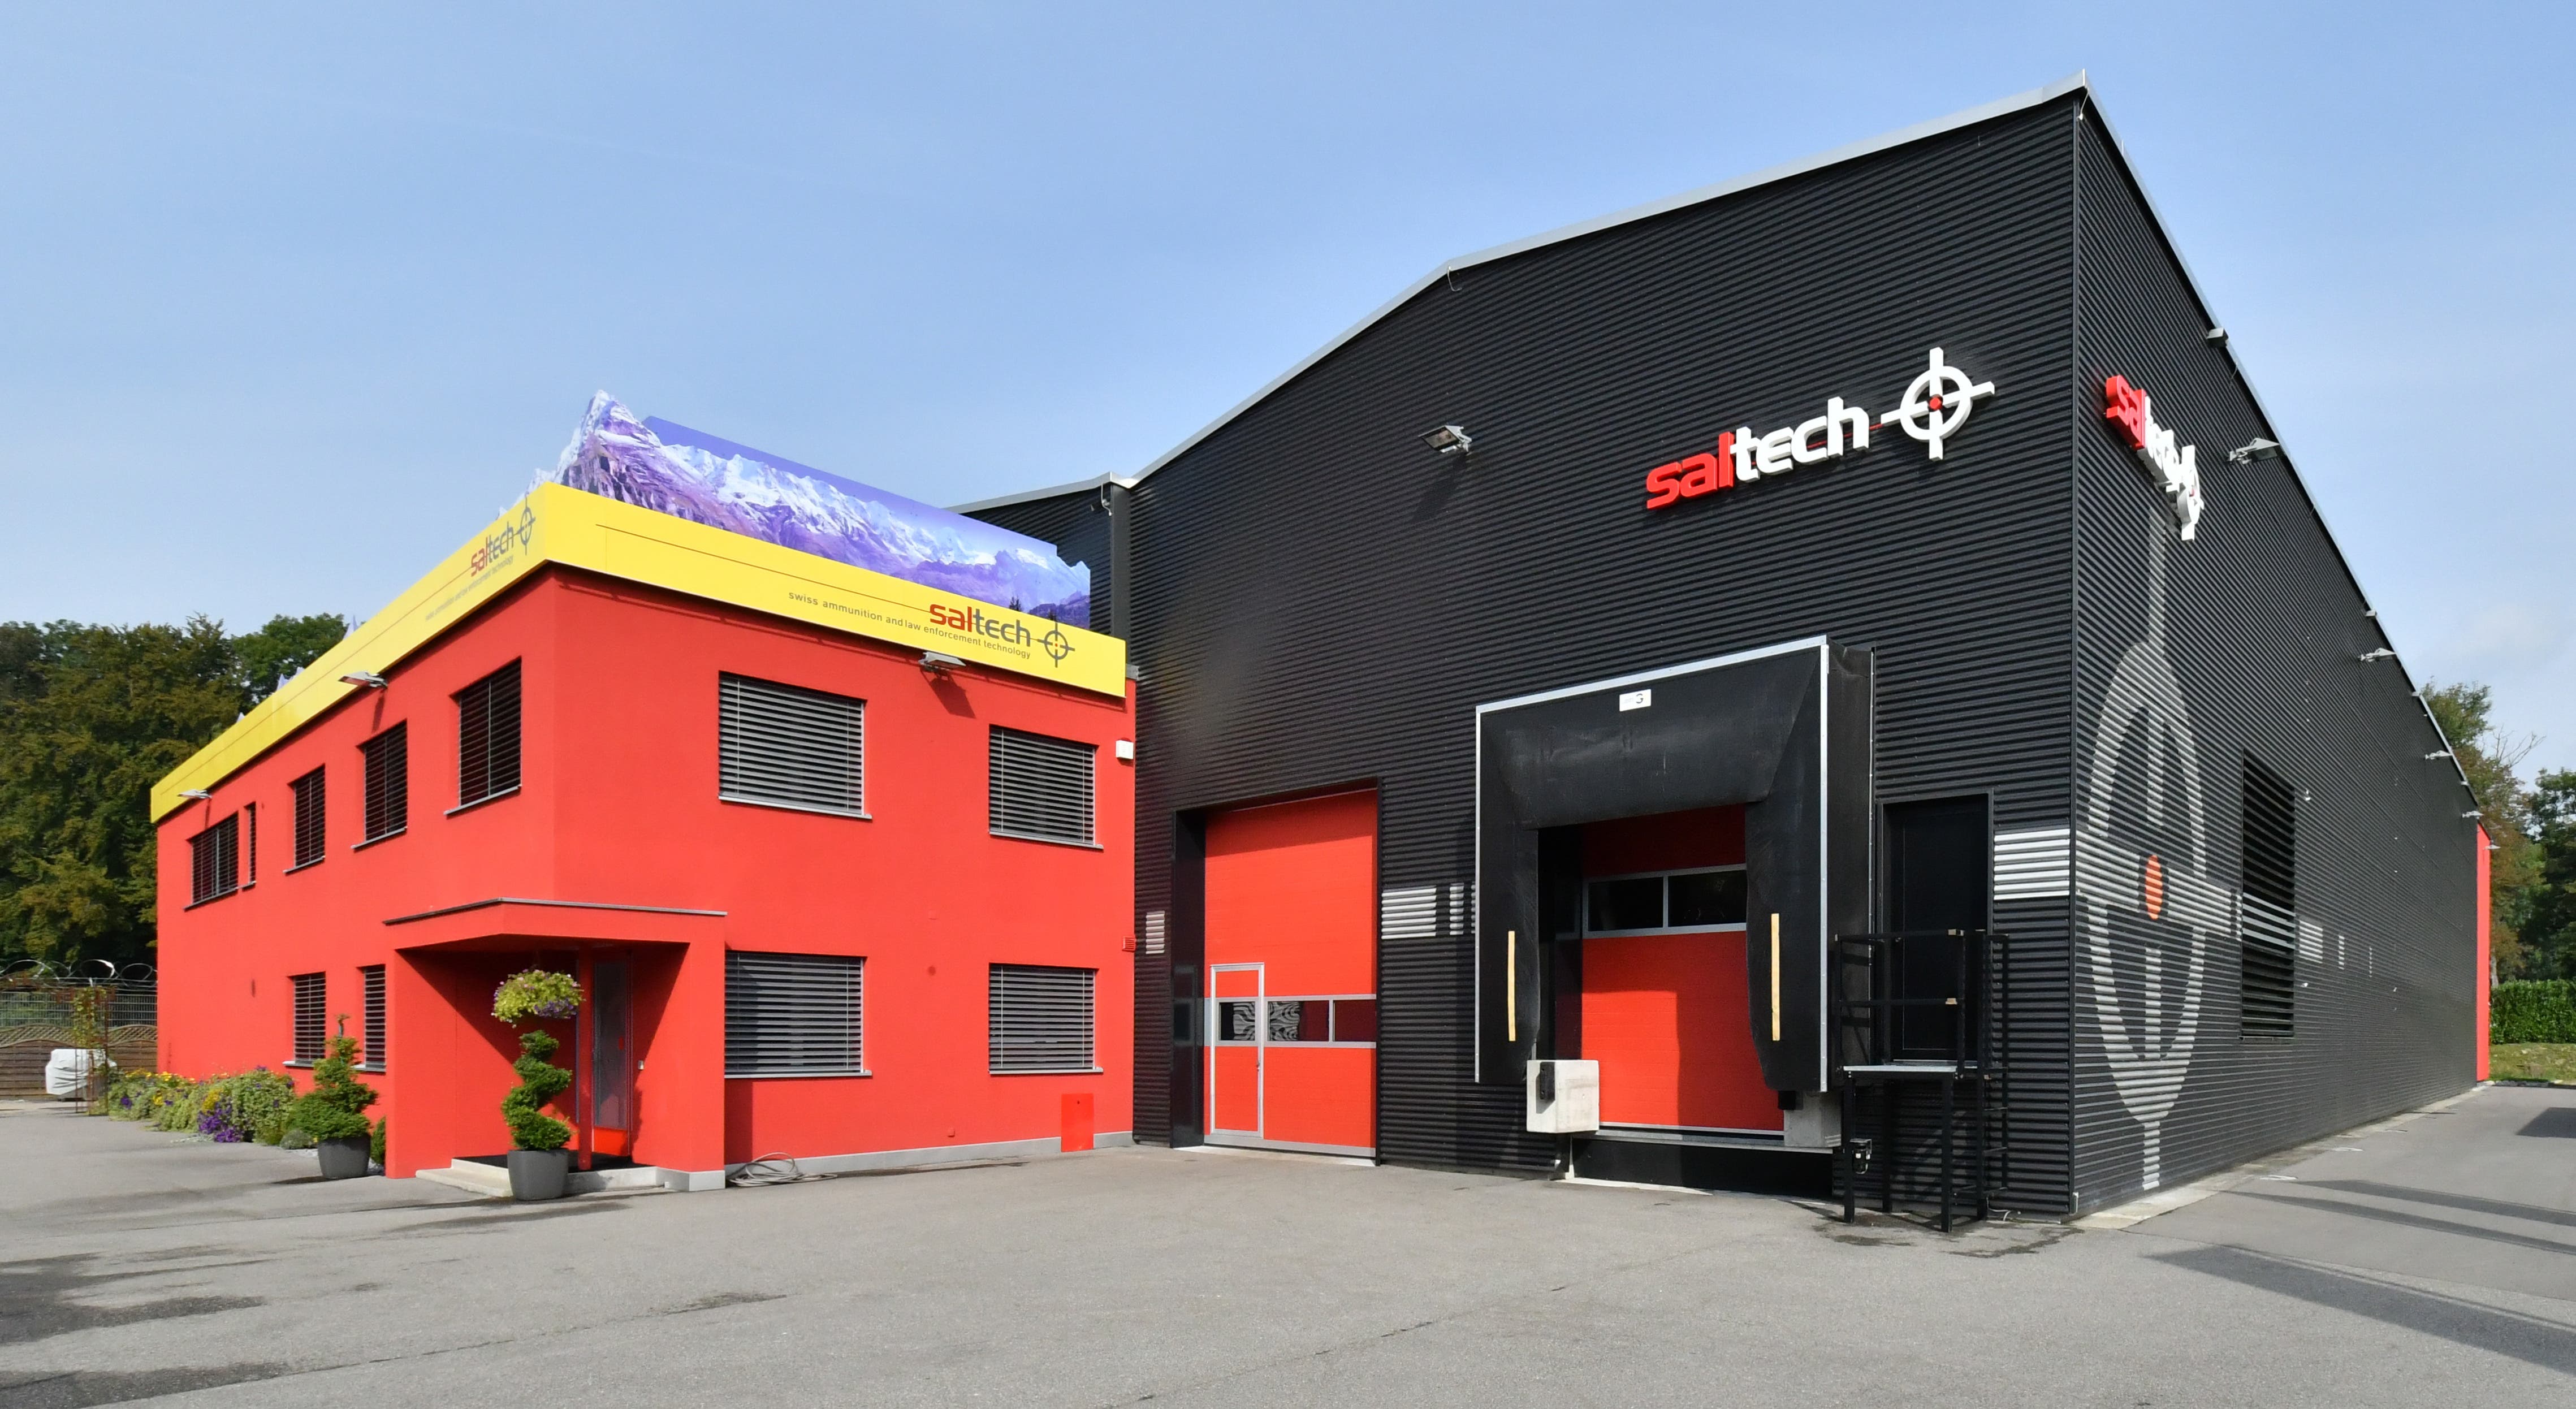 Die saltech AG: Im Herbst 2020 beschäftigte das Unternehmen an seinen Standorten in Däniken und Dulliken rund 60 Mitarbeitende. Diese Stellen wollte man nach der Aufhebung der Nachlassstundung auf 80 ausbauen.